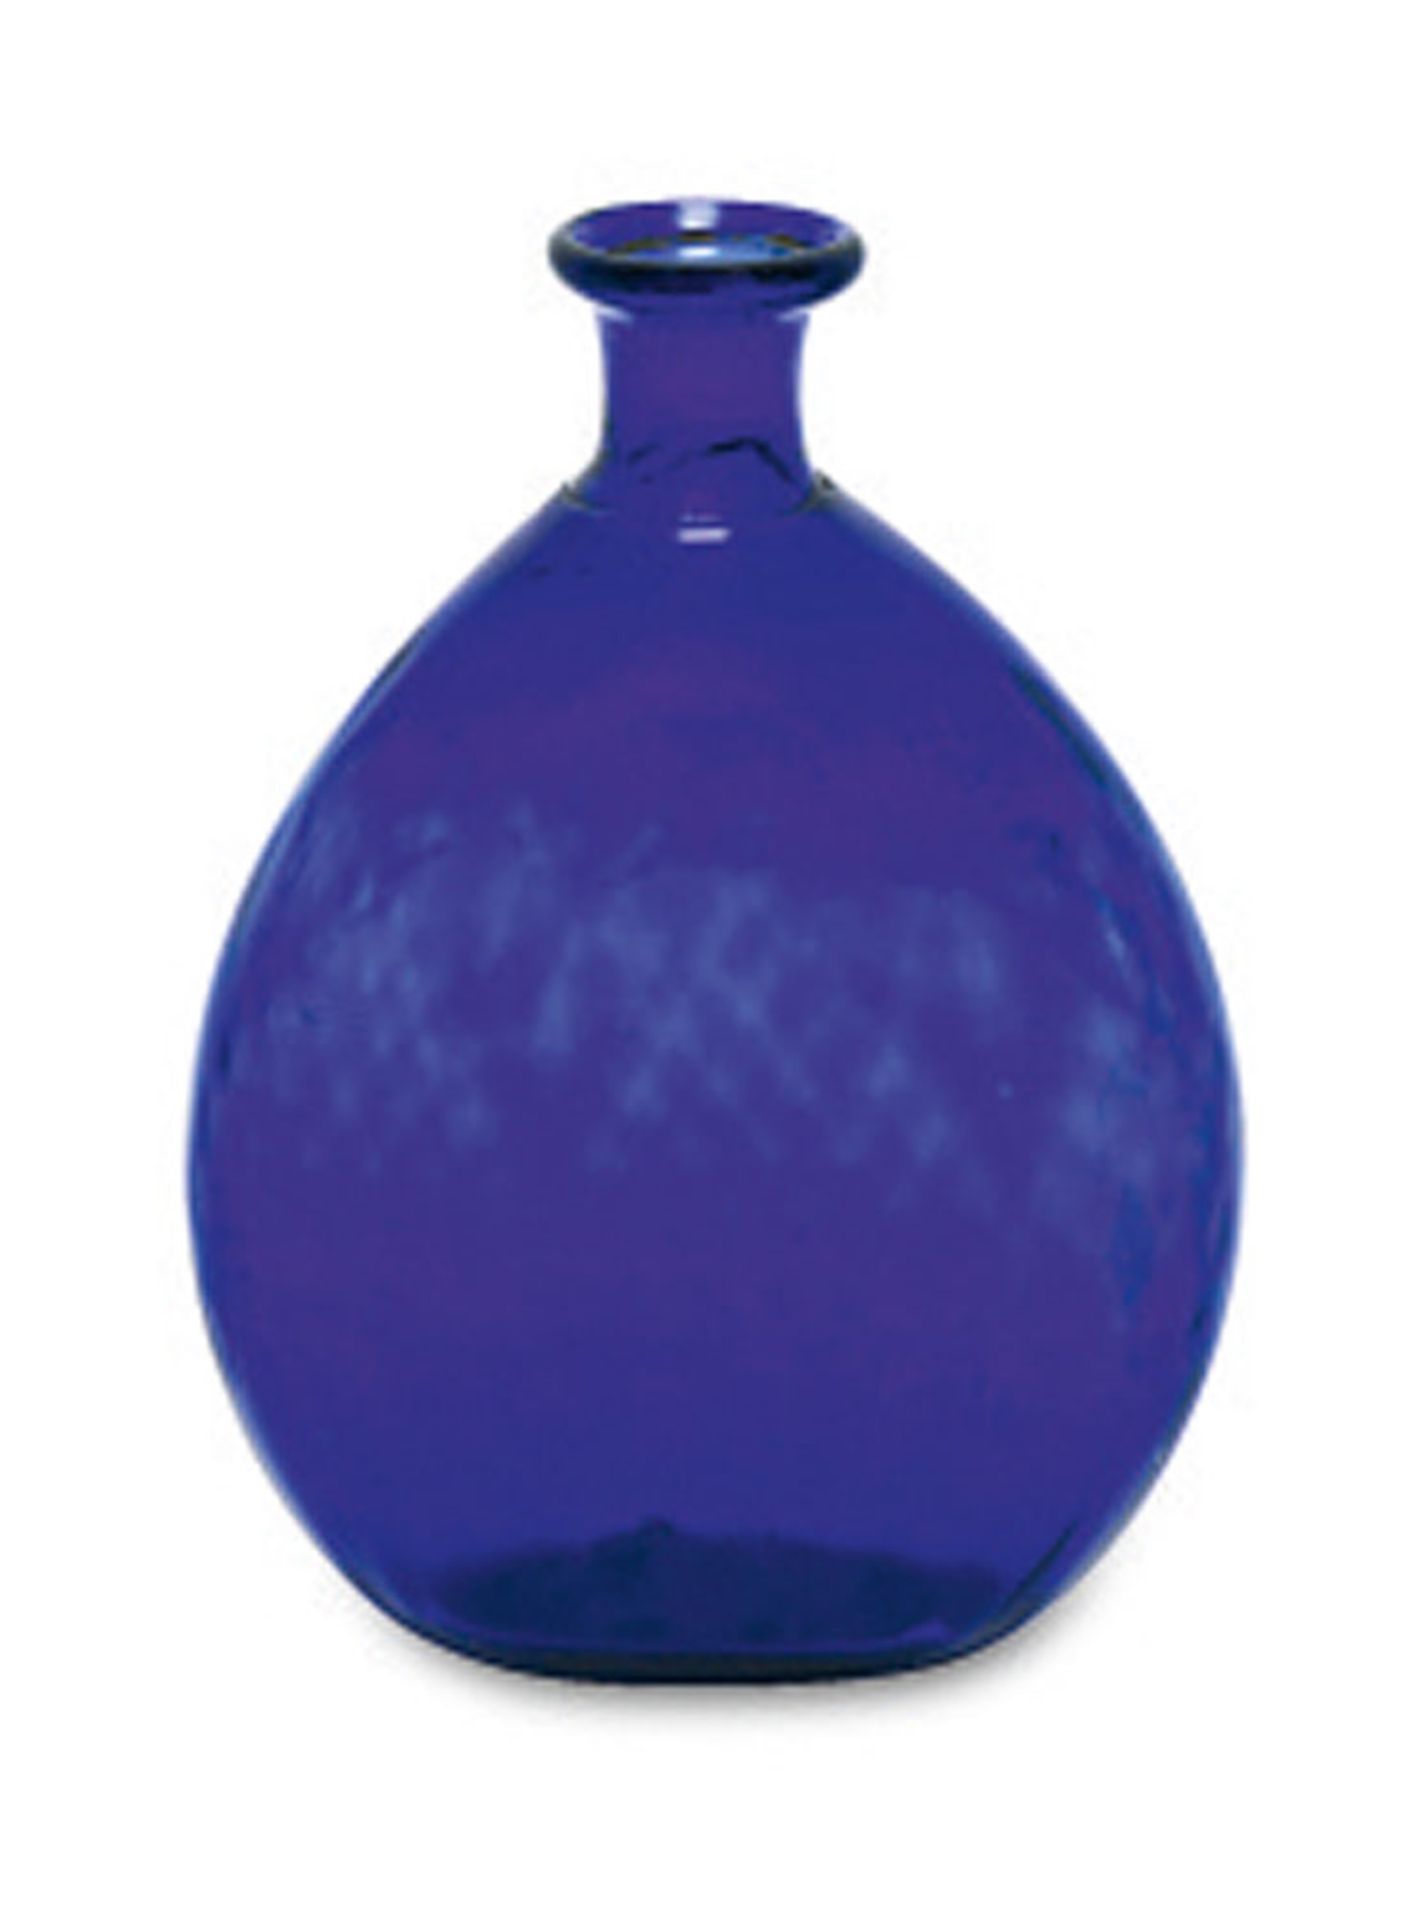 PlattflascheSteiermark, um 1800 Kobaltblaues Glas mit hochgestochenem Boden und optischem Waffel-,